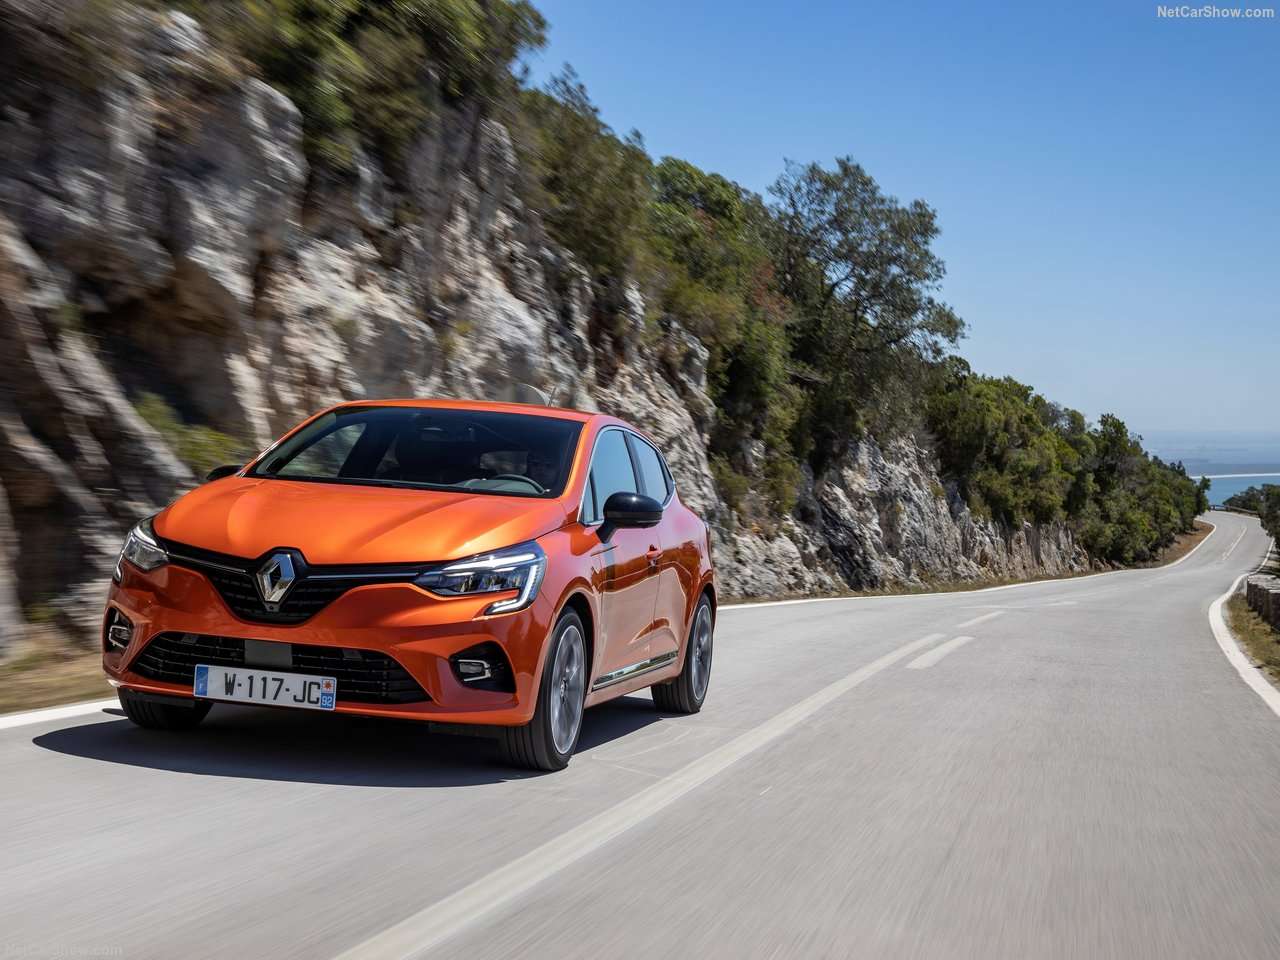 Πρώτη δοκιμή του νέου Renault Clio στην Ελλάδα